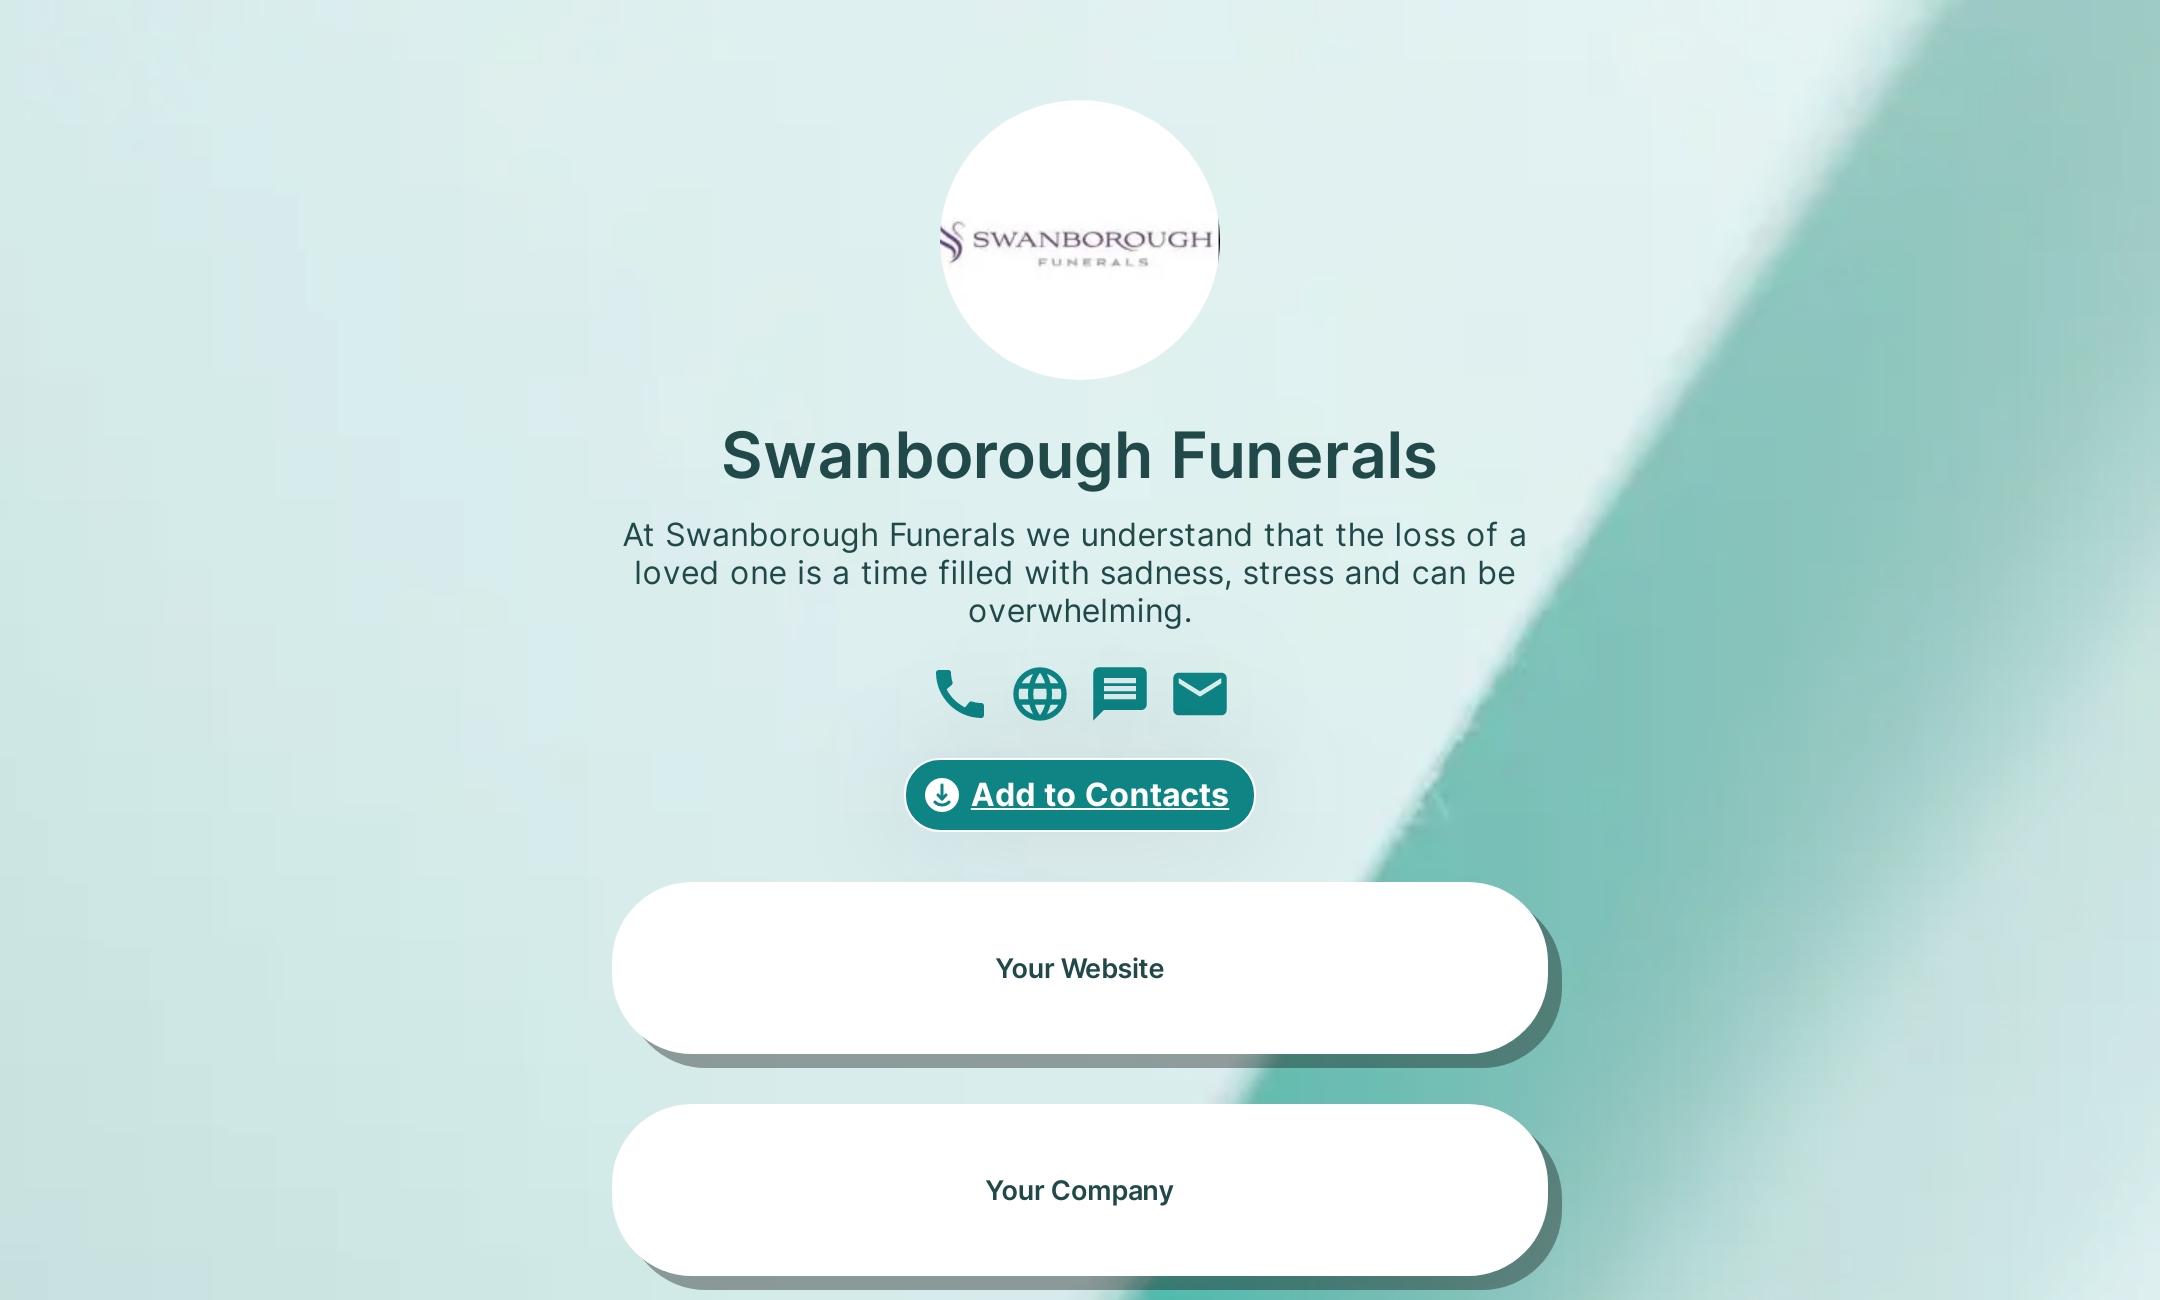 Swanborough Funerals' Flowpage